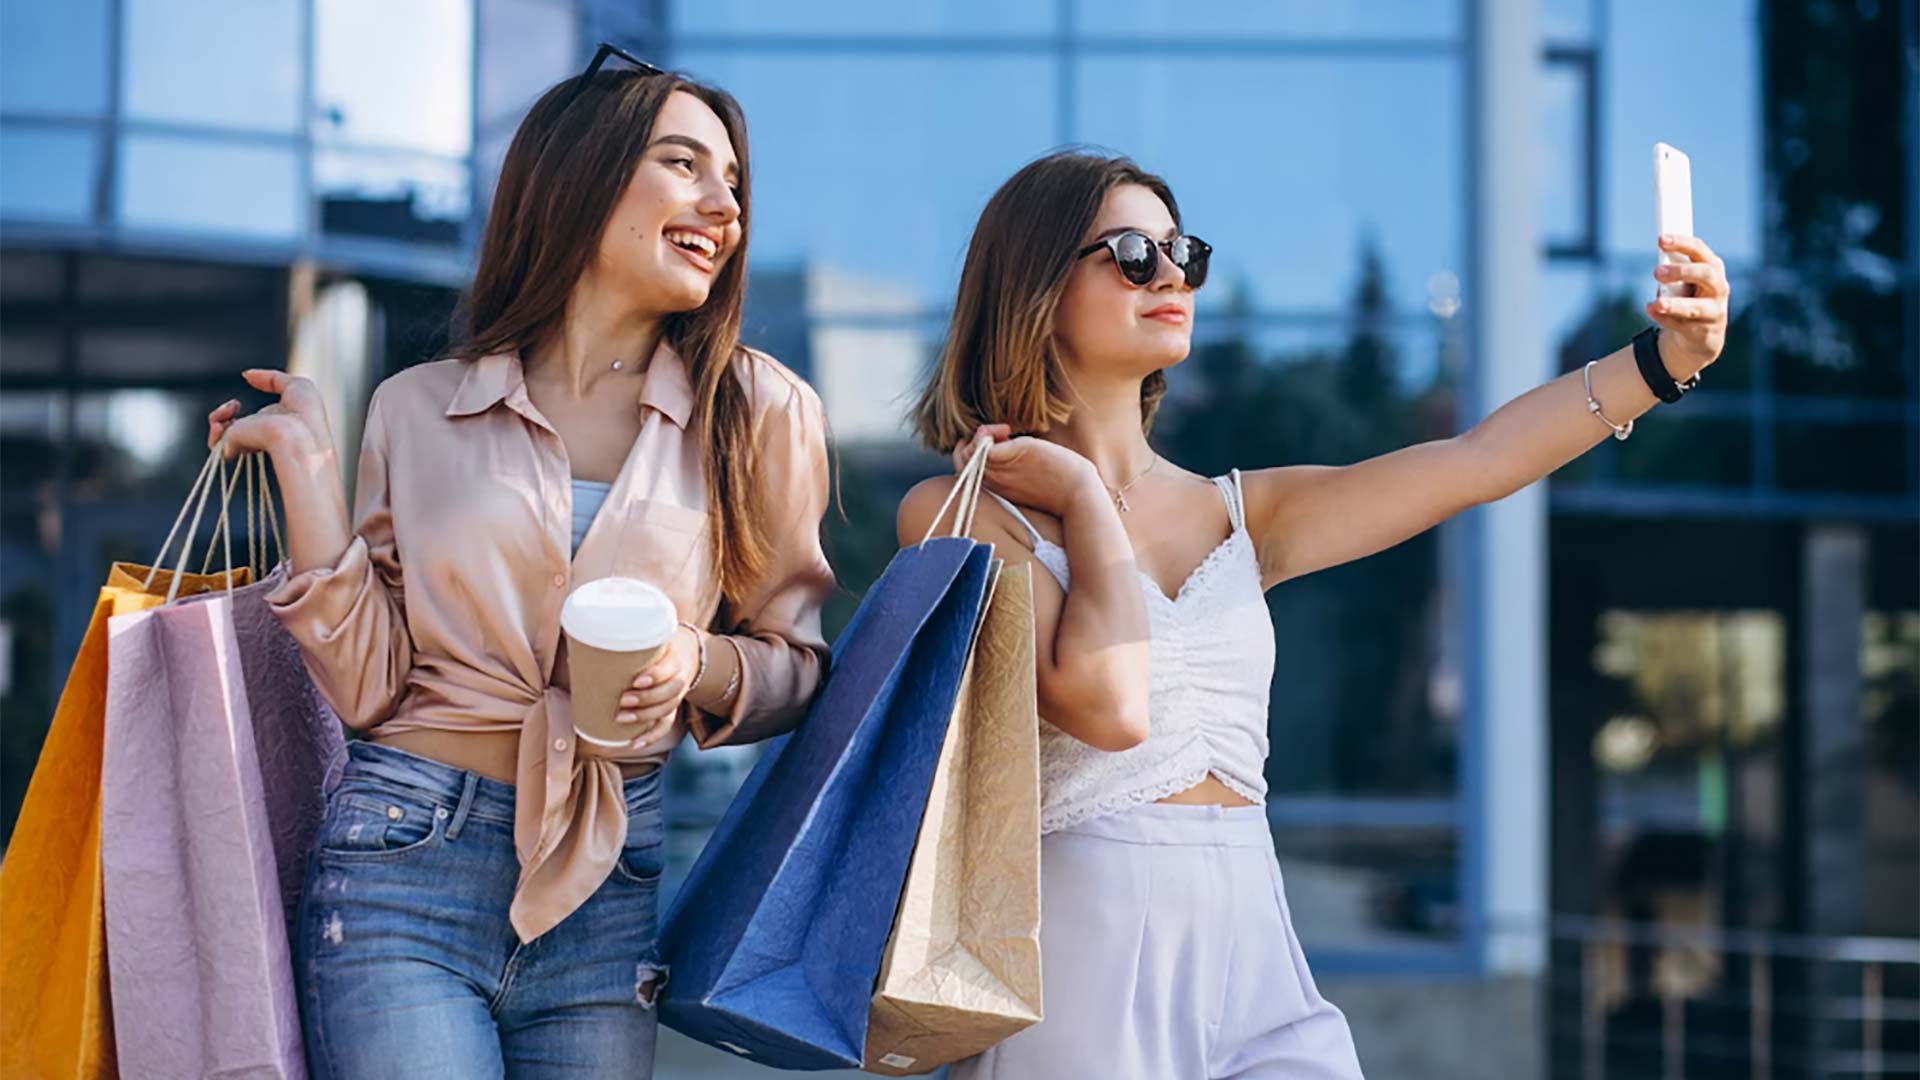 Retailtainment, unique experiences in shopping centres